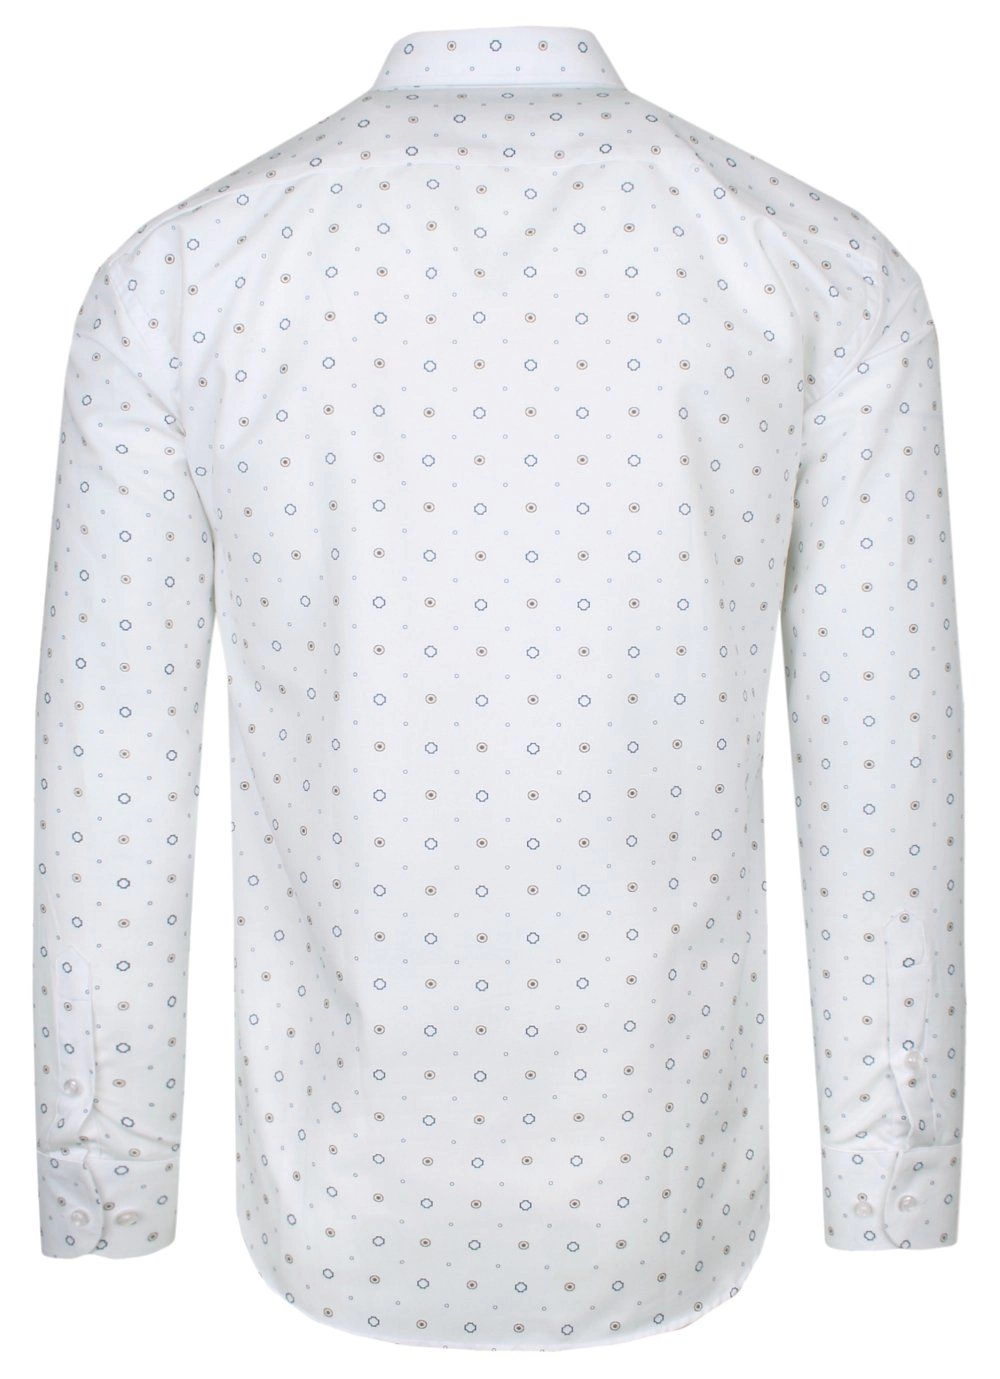 Koszula Bawełniana Biała w Geometryczny Wzór Brązowo-Granatowy, Taliowana, Długi Rękaw -QUICKSIDE